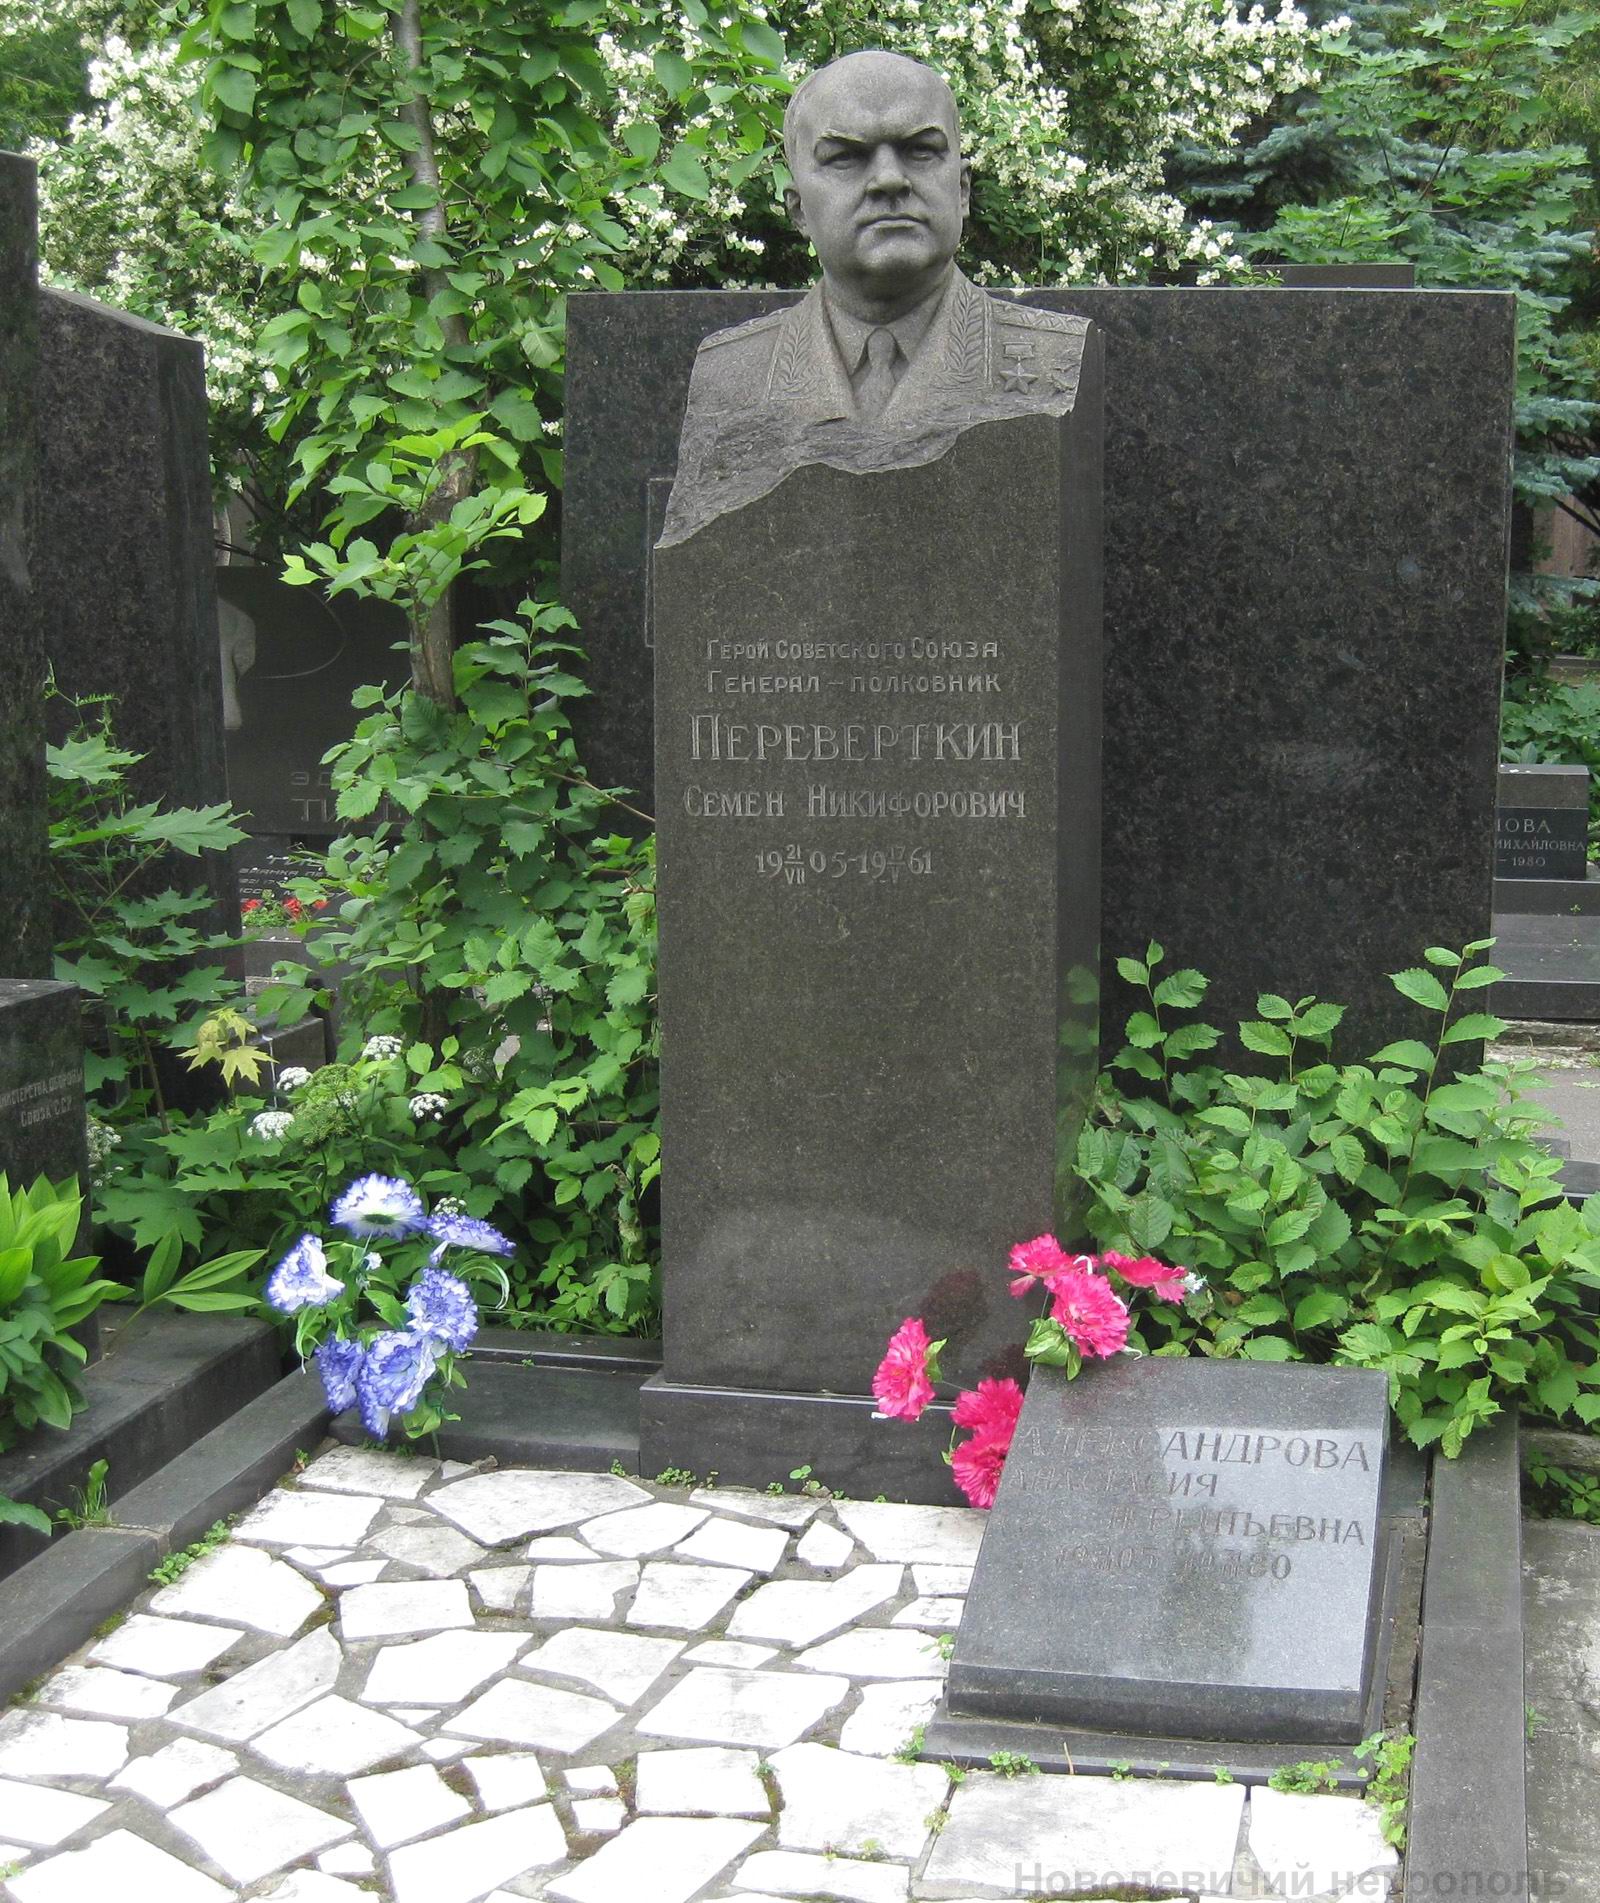 Памятник на могиле Перевёрткина С.Н. (1905-1961), ск. Г.Постников, на Новодевичьем кладбище (8-12-2).